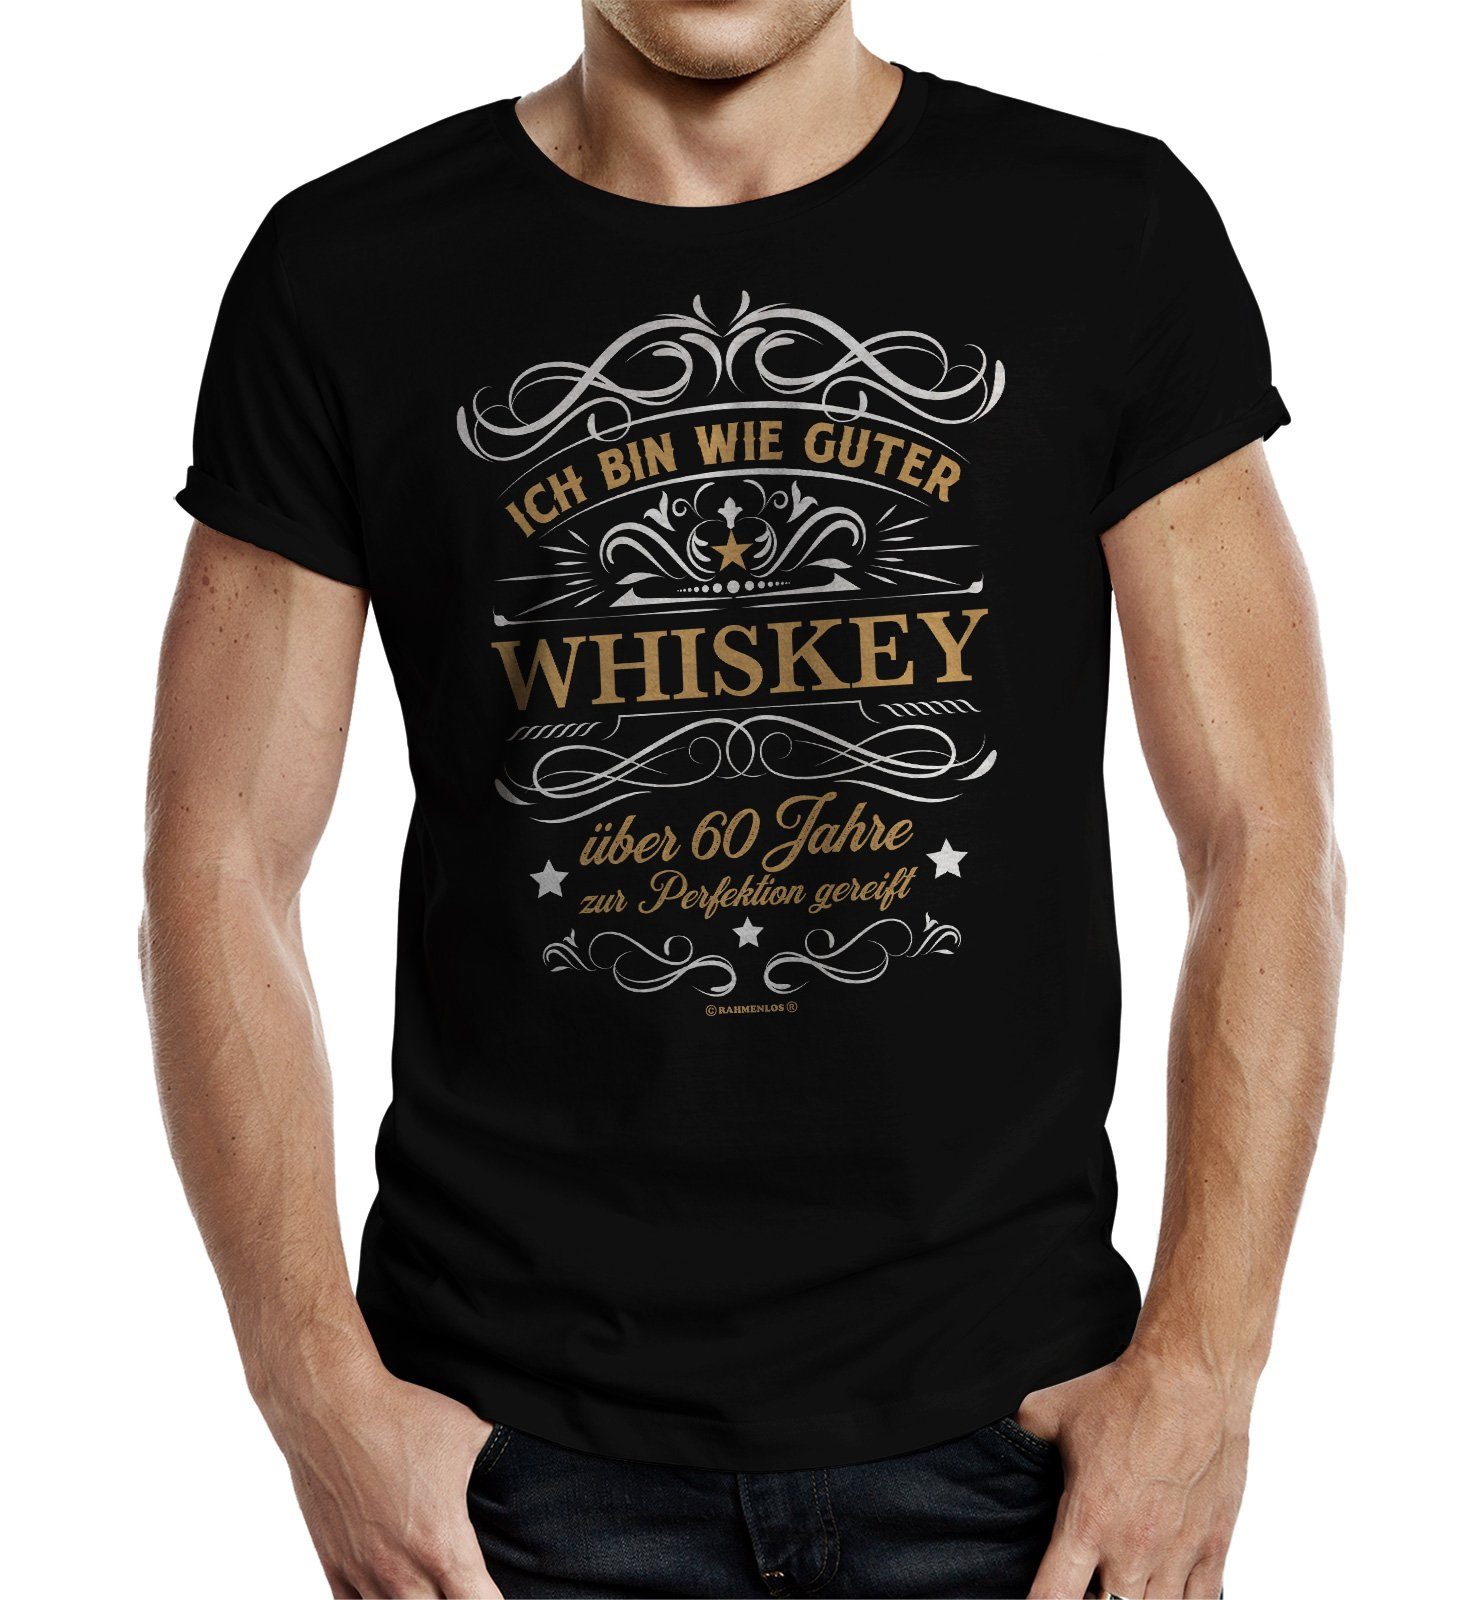 Rahmenlos T-Shirt Geschenk zum 60. Geburtstag - wie guter Whiskey 60 Jahre gereift